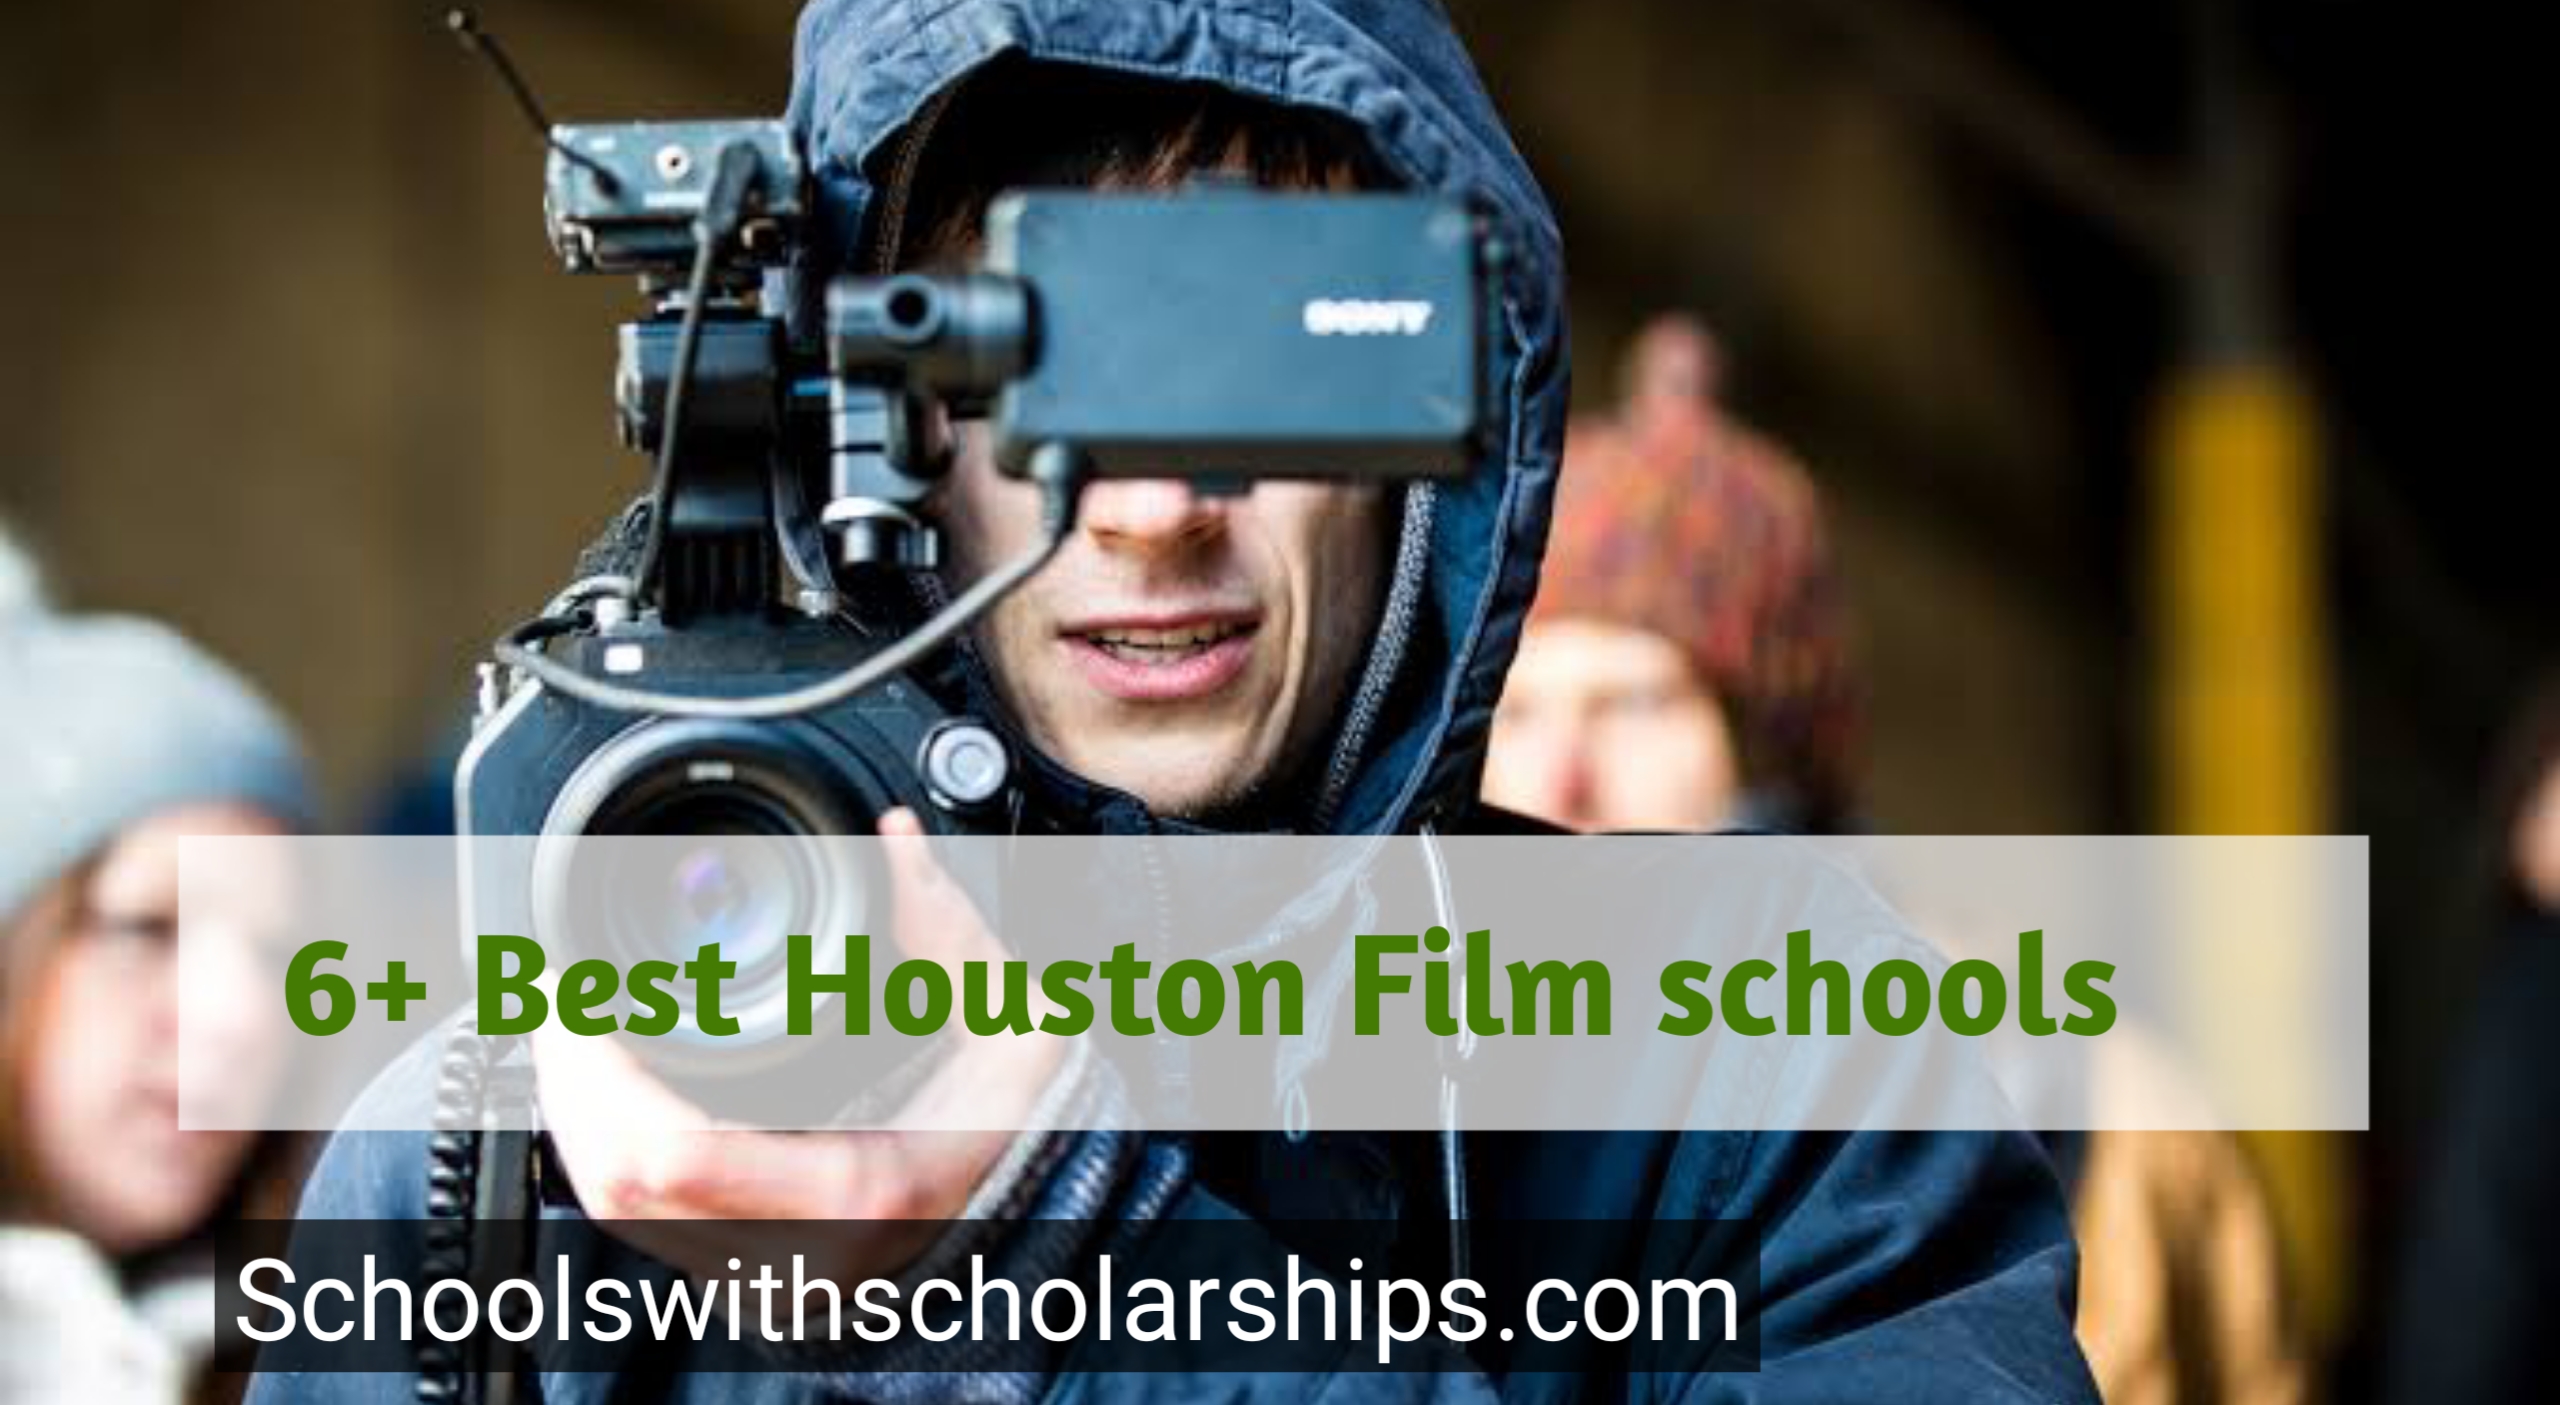 Houston Film schools